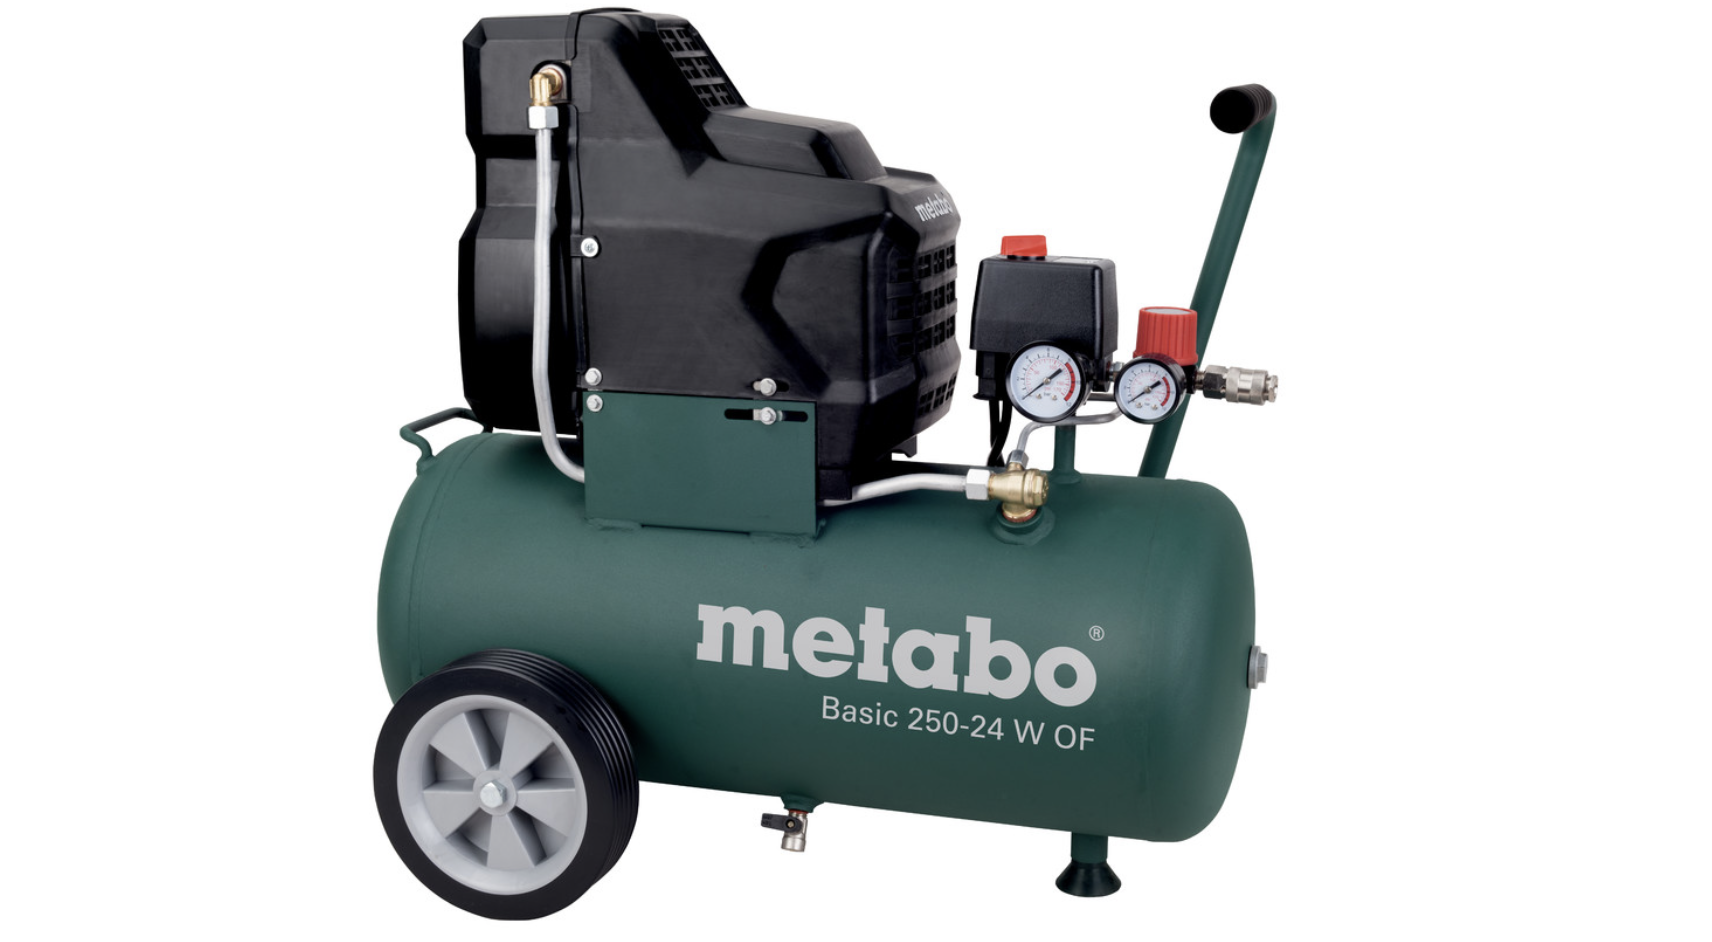 Basic 250-24 W OF Metabo